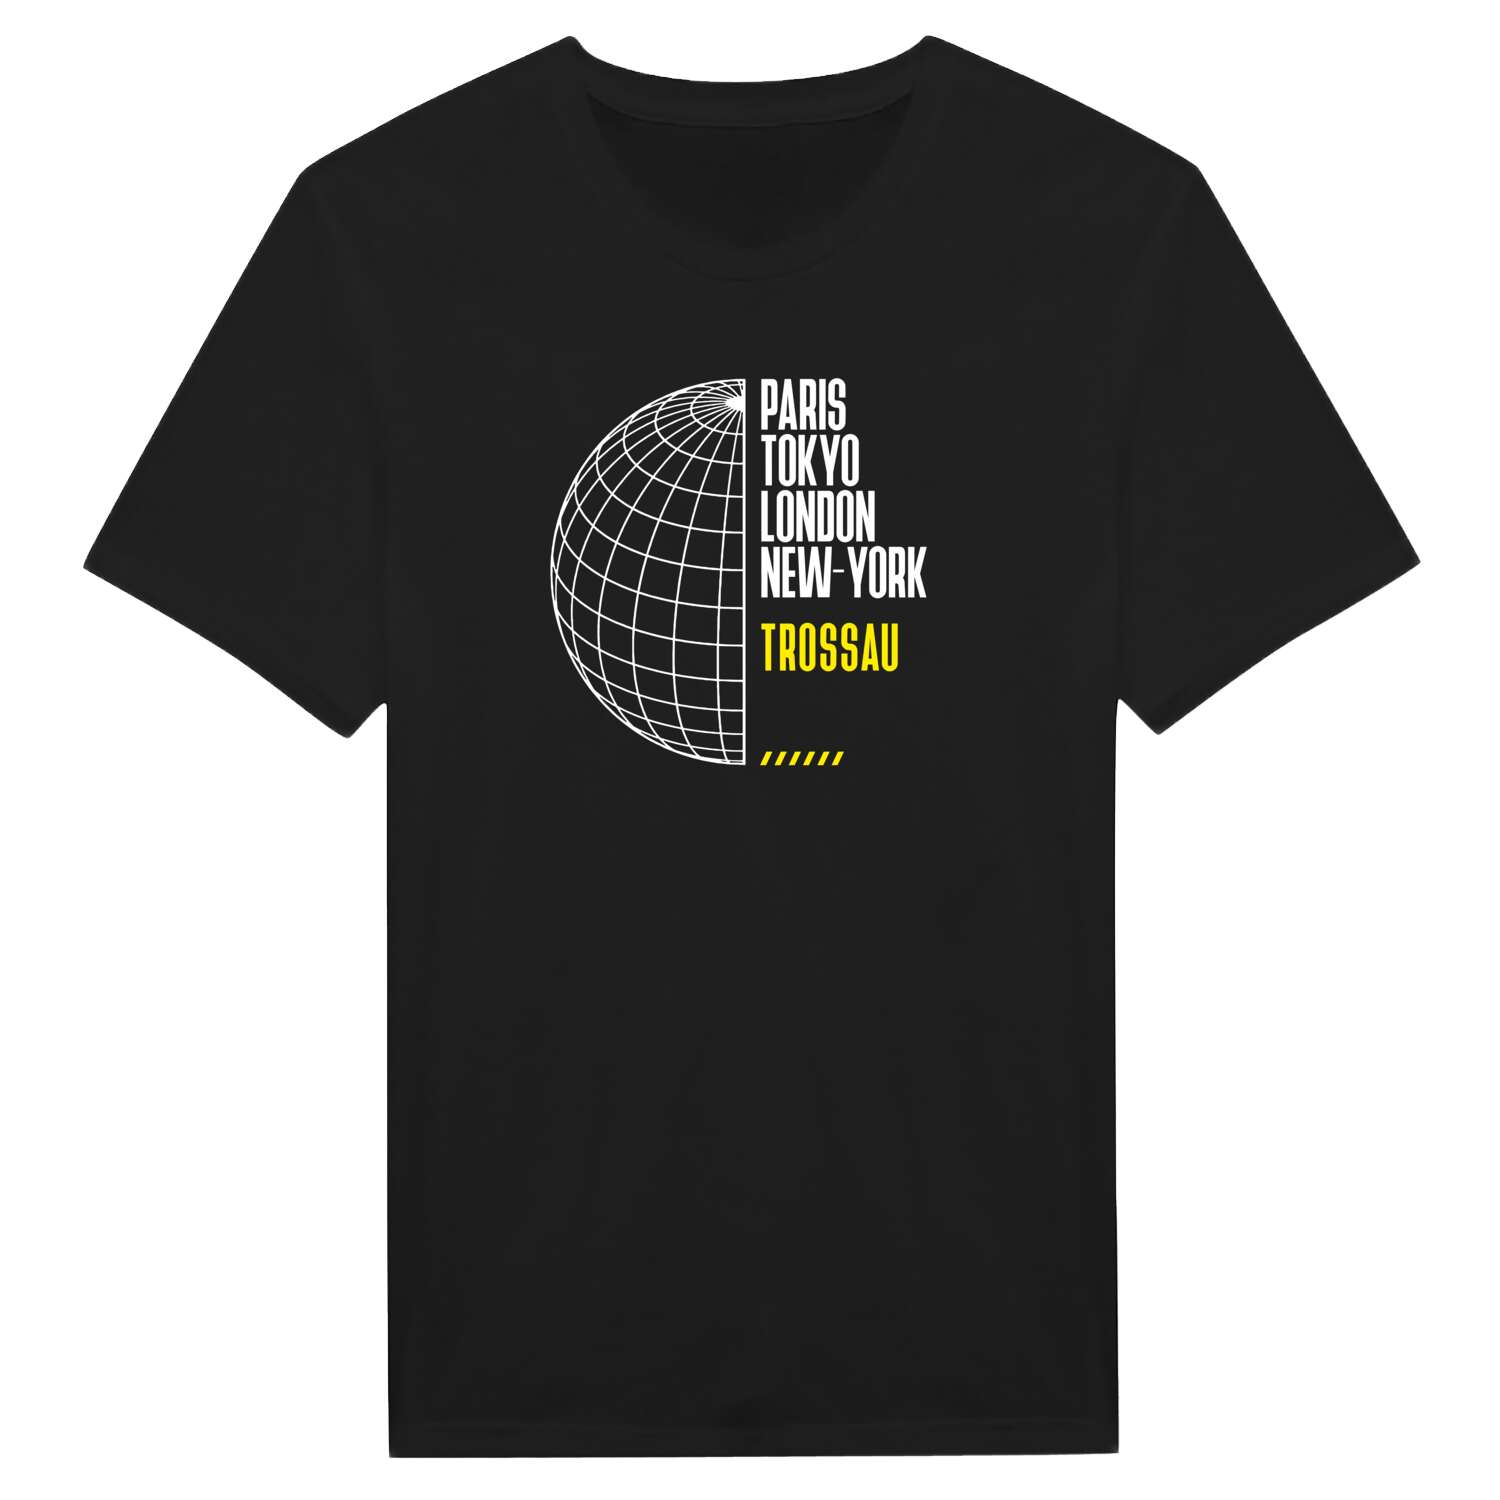 Trossau T-Shirt »Paris Tokyo London«